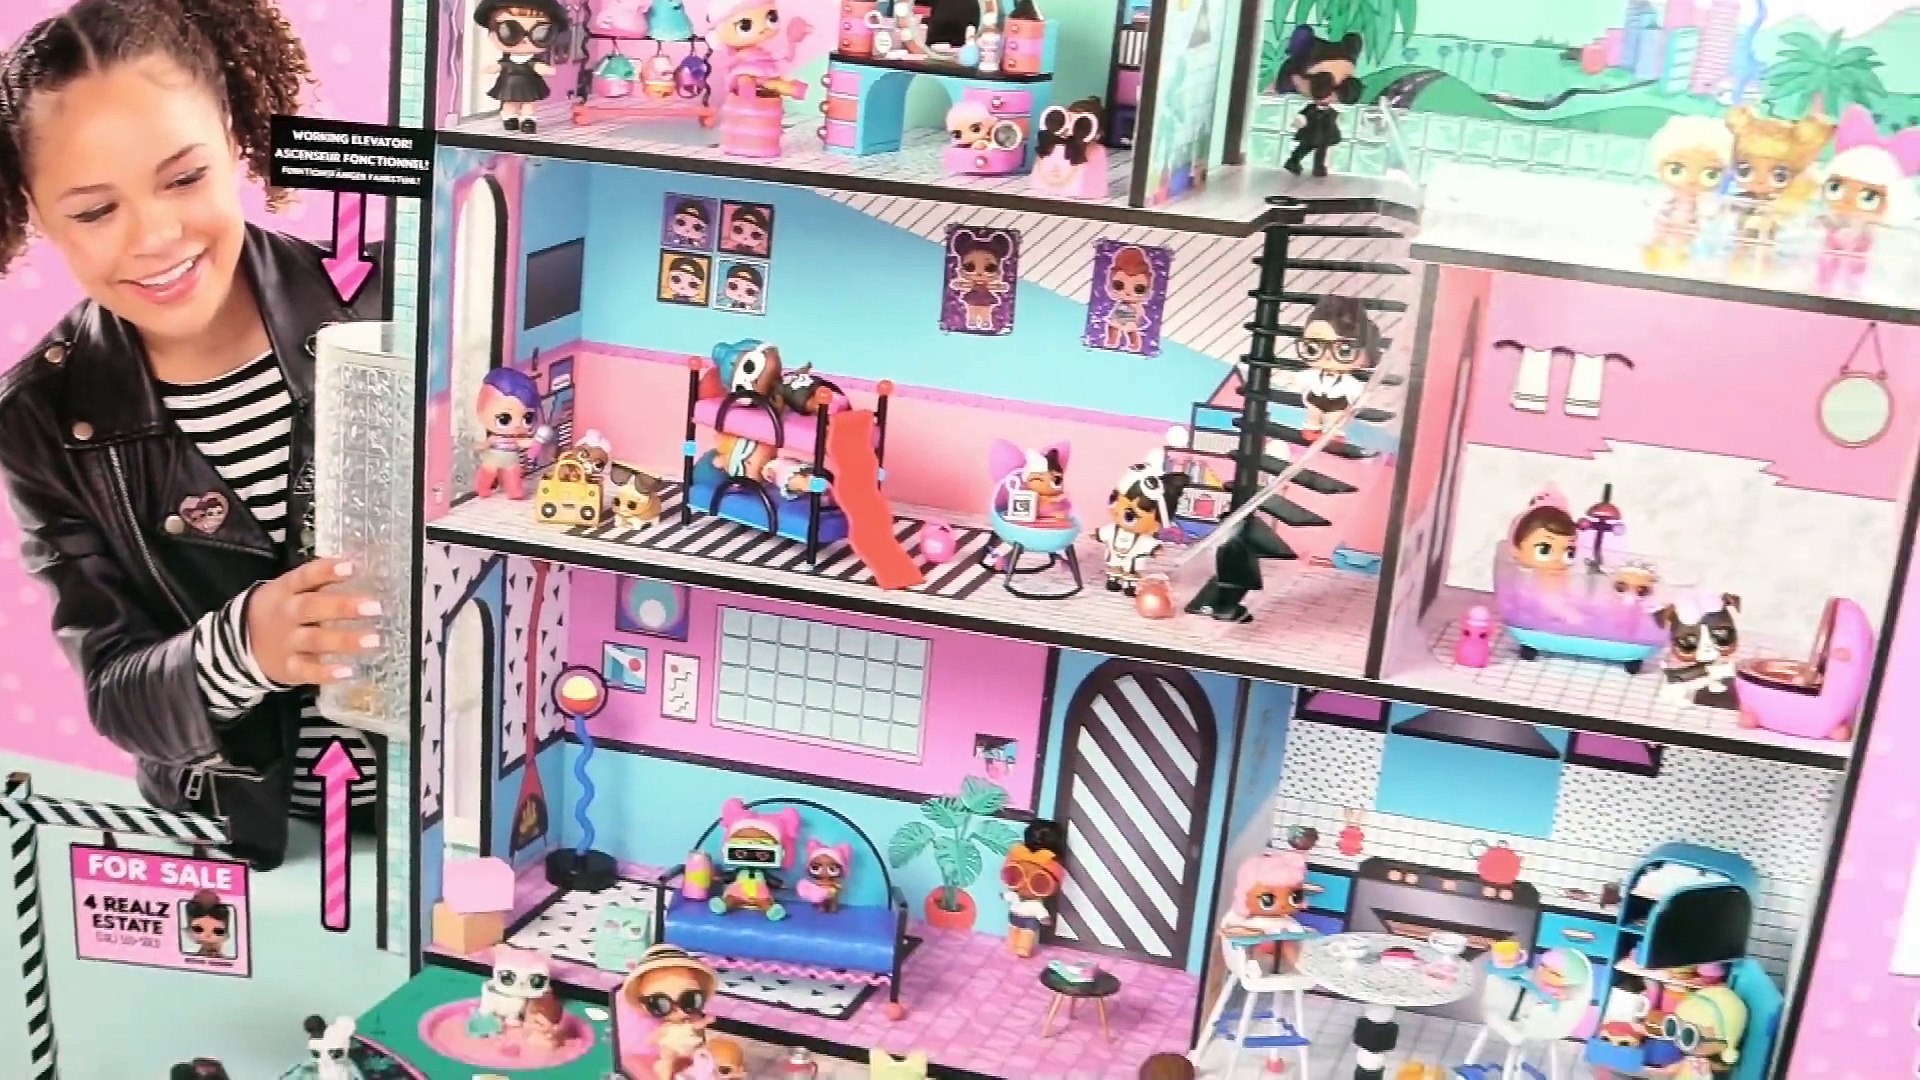 lol dolls doll house